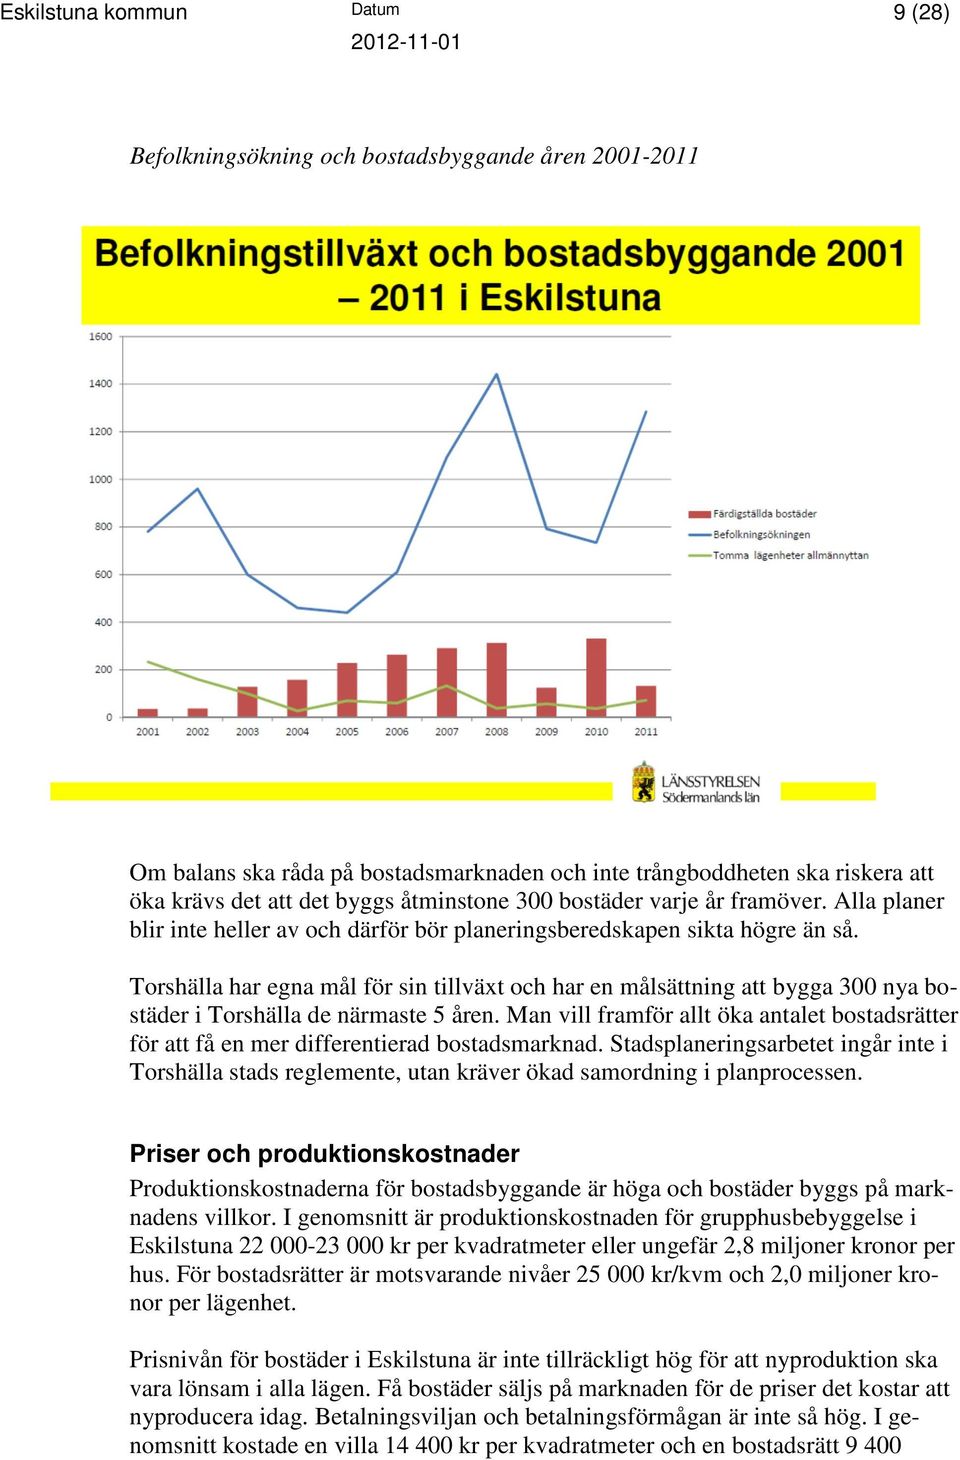 Torshälla har egna mål för sin tillväxt och har en målsättning att bygga 300 nya bostäder i Torshälla de närmaste 5 åren.